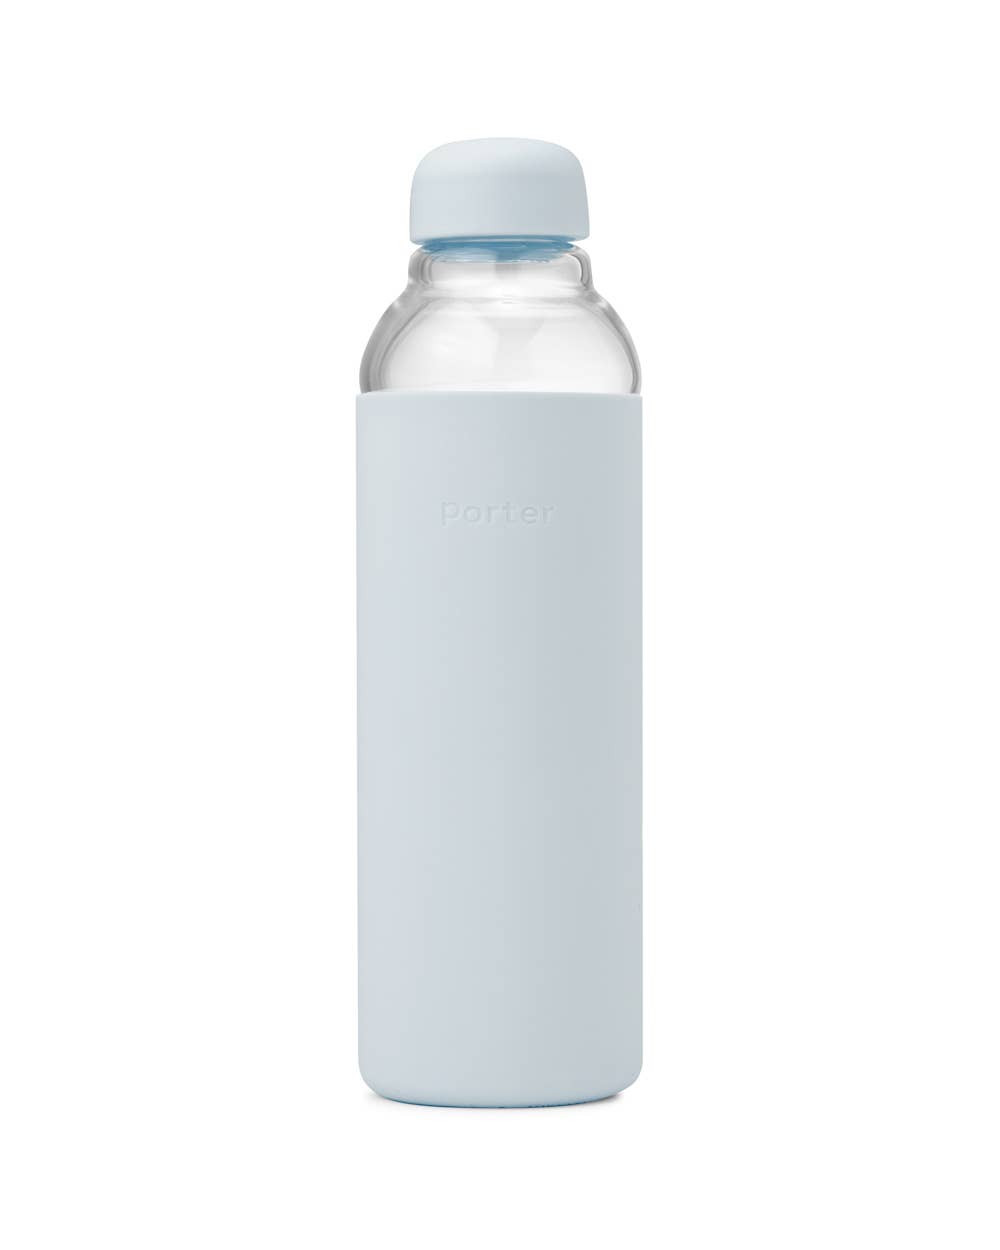 Glass Water Bottle: Mint